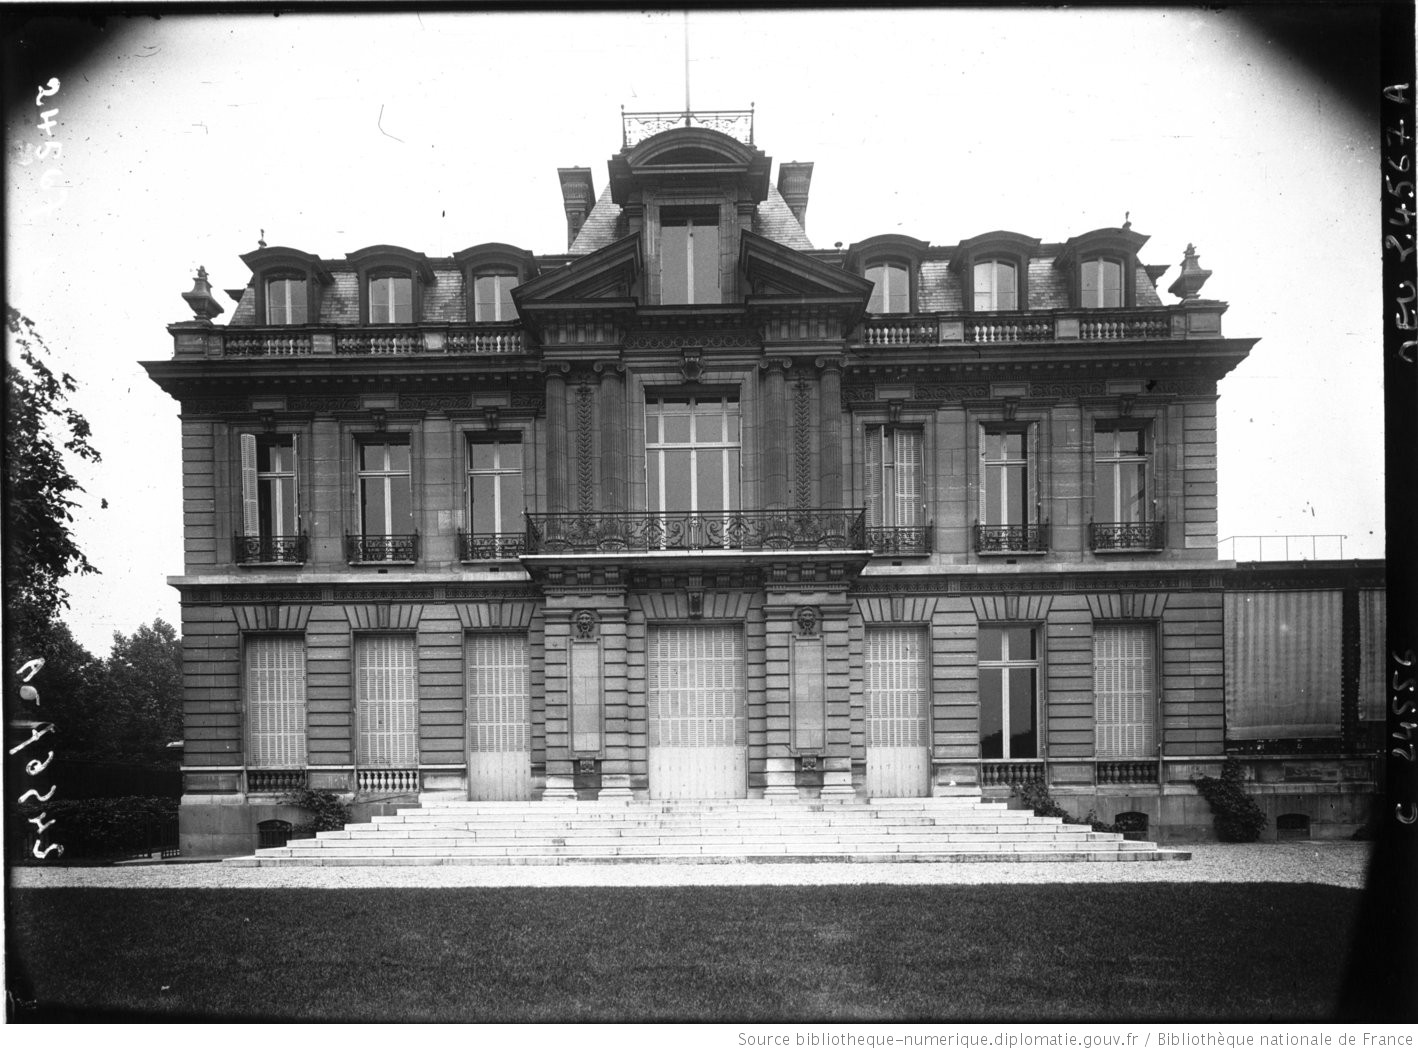 Photographie du bâtiment occupé par l'ambassade des États-Unis à Paris